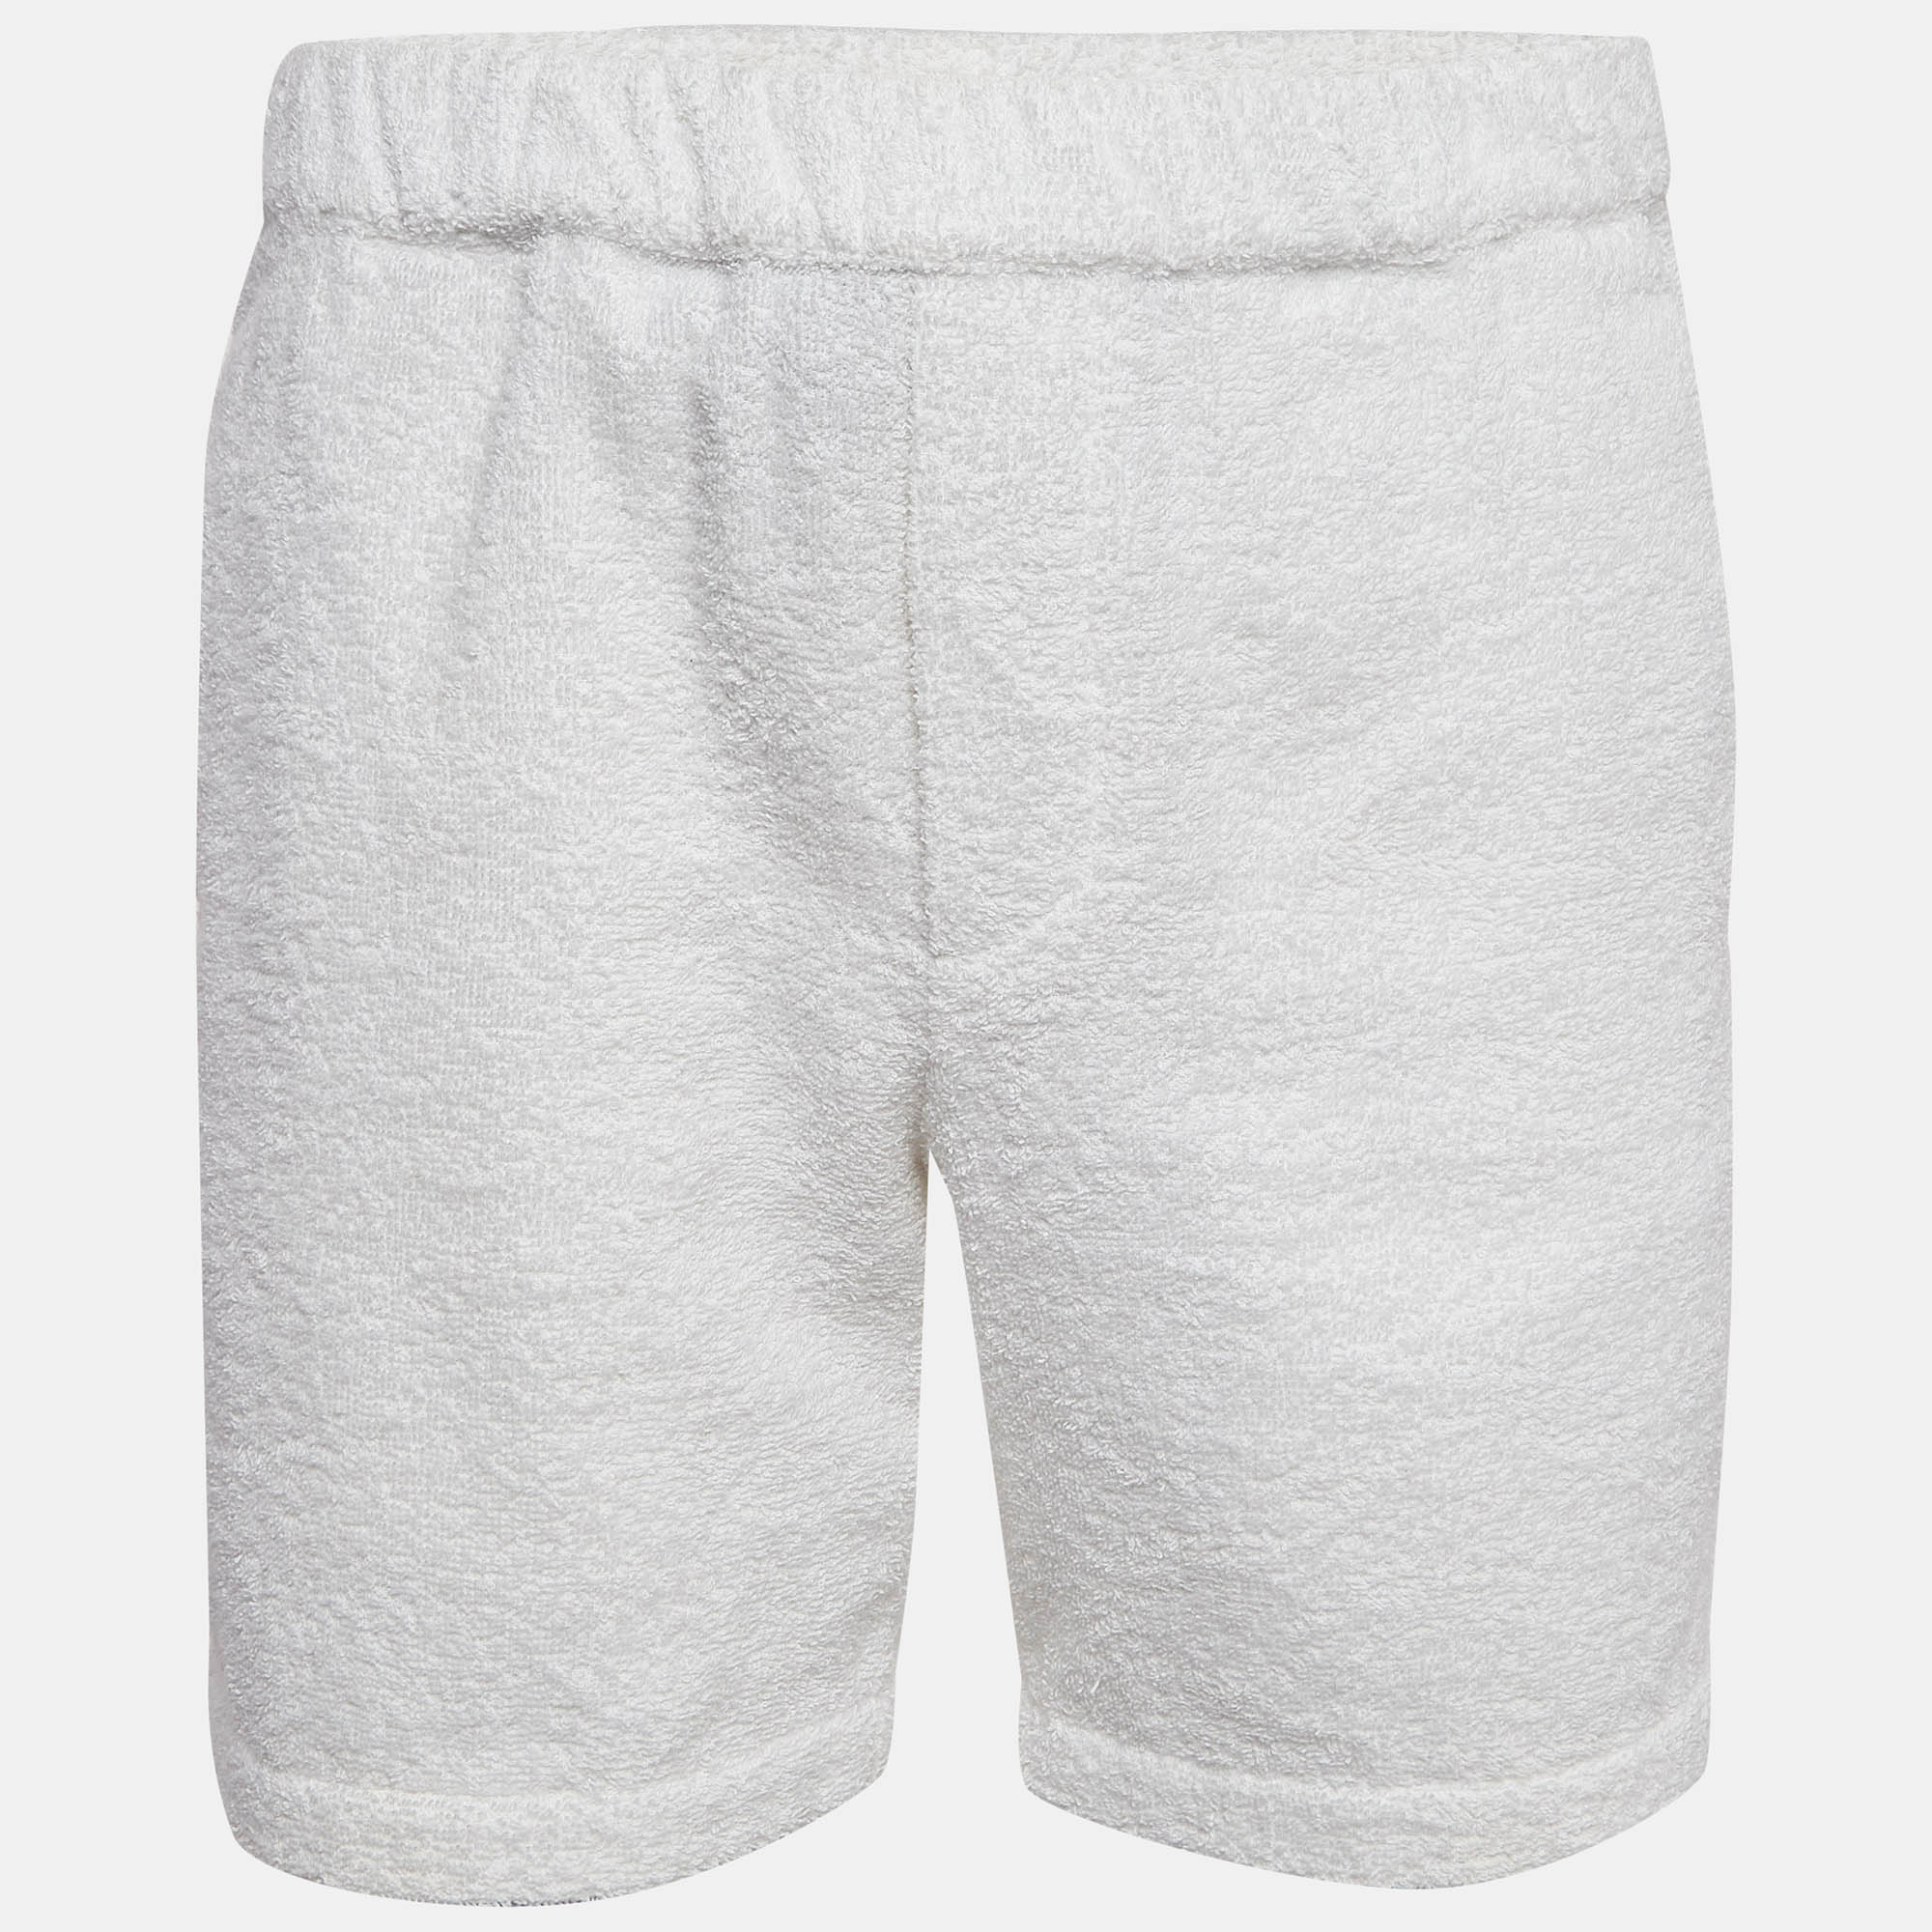 Prada white cotton terry shorts m